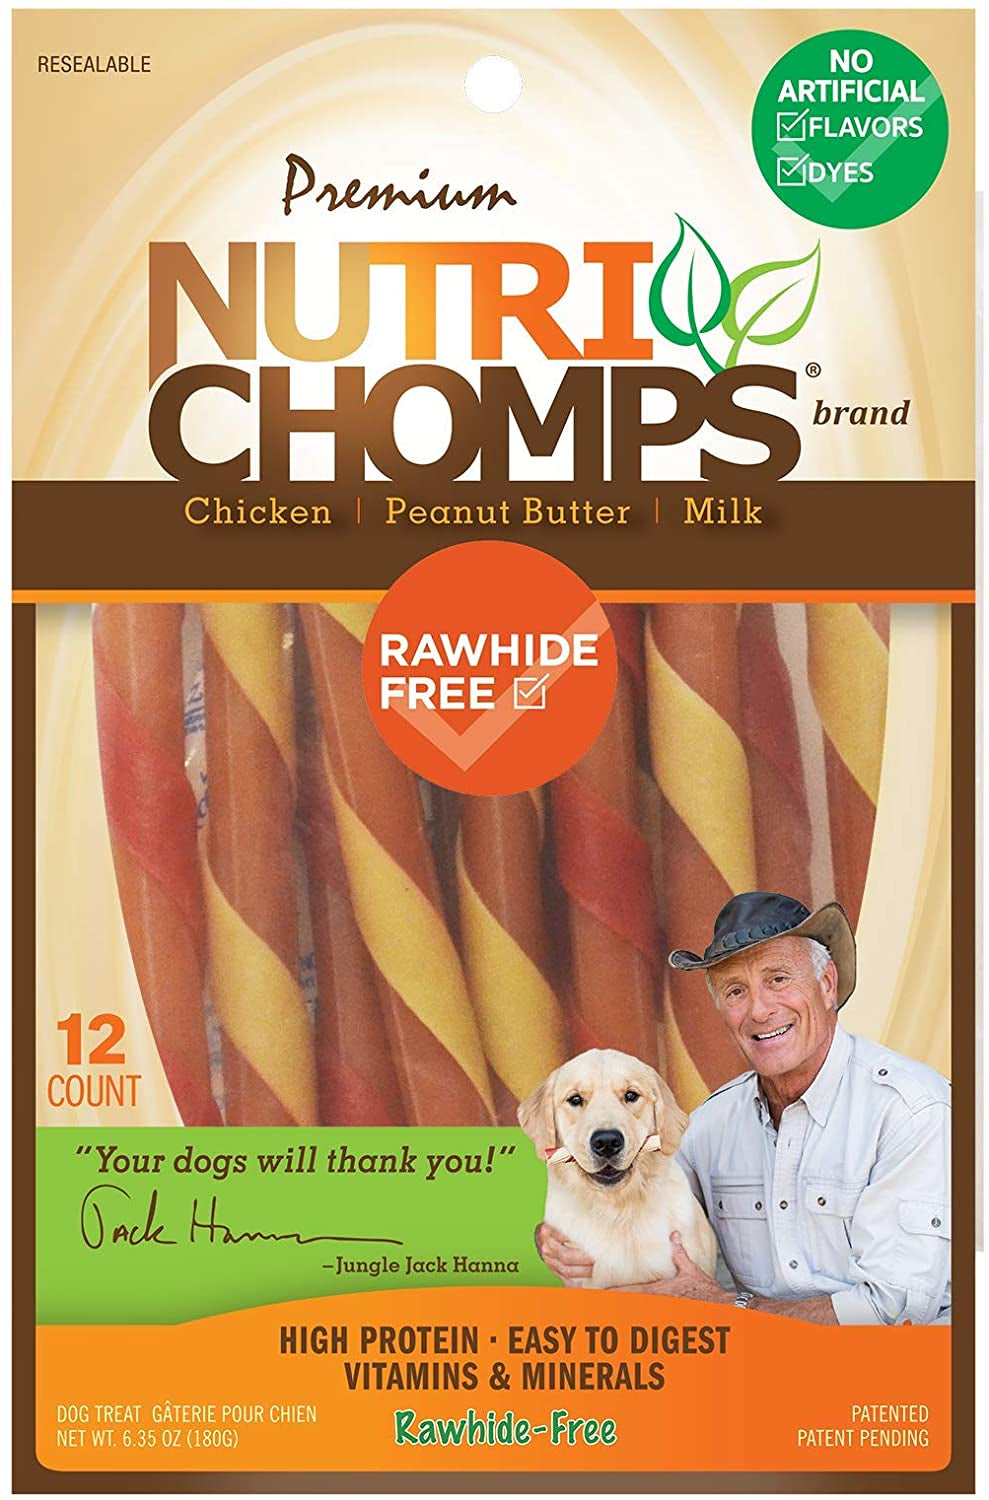 72 count (6 x 12 ct) Nutri Chomps Mini Twist Dog Treat Peanut Assorted Flavors